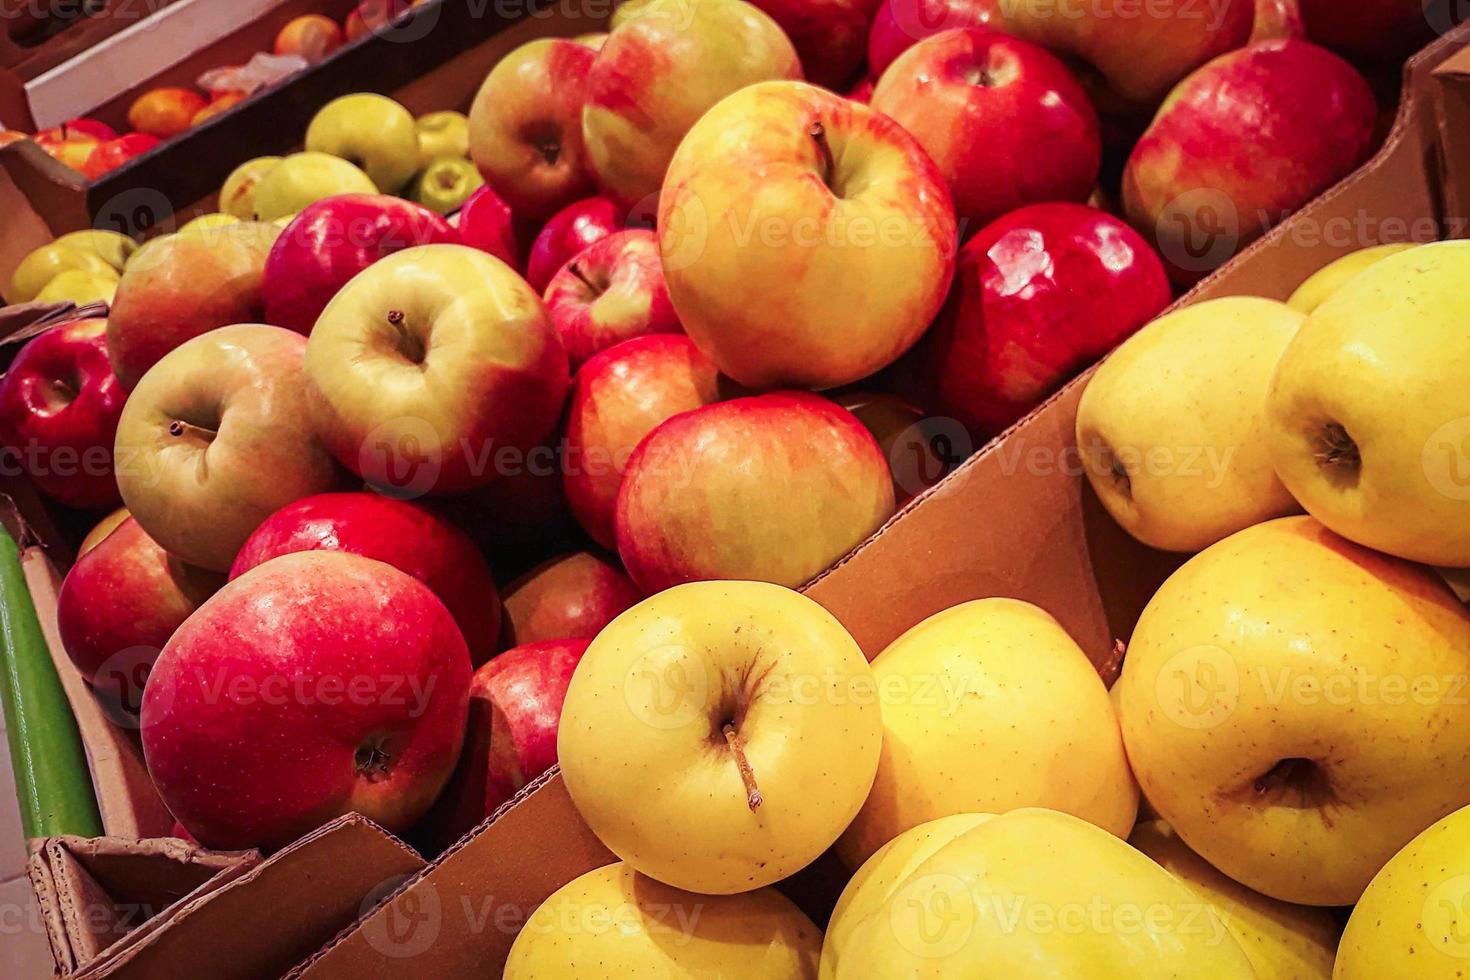 récolter les pommes mûres. vente de fruits juteux au marché fermier. alimentation écologique biologique. photo